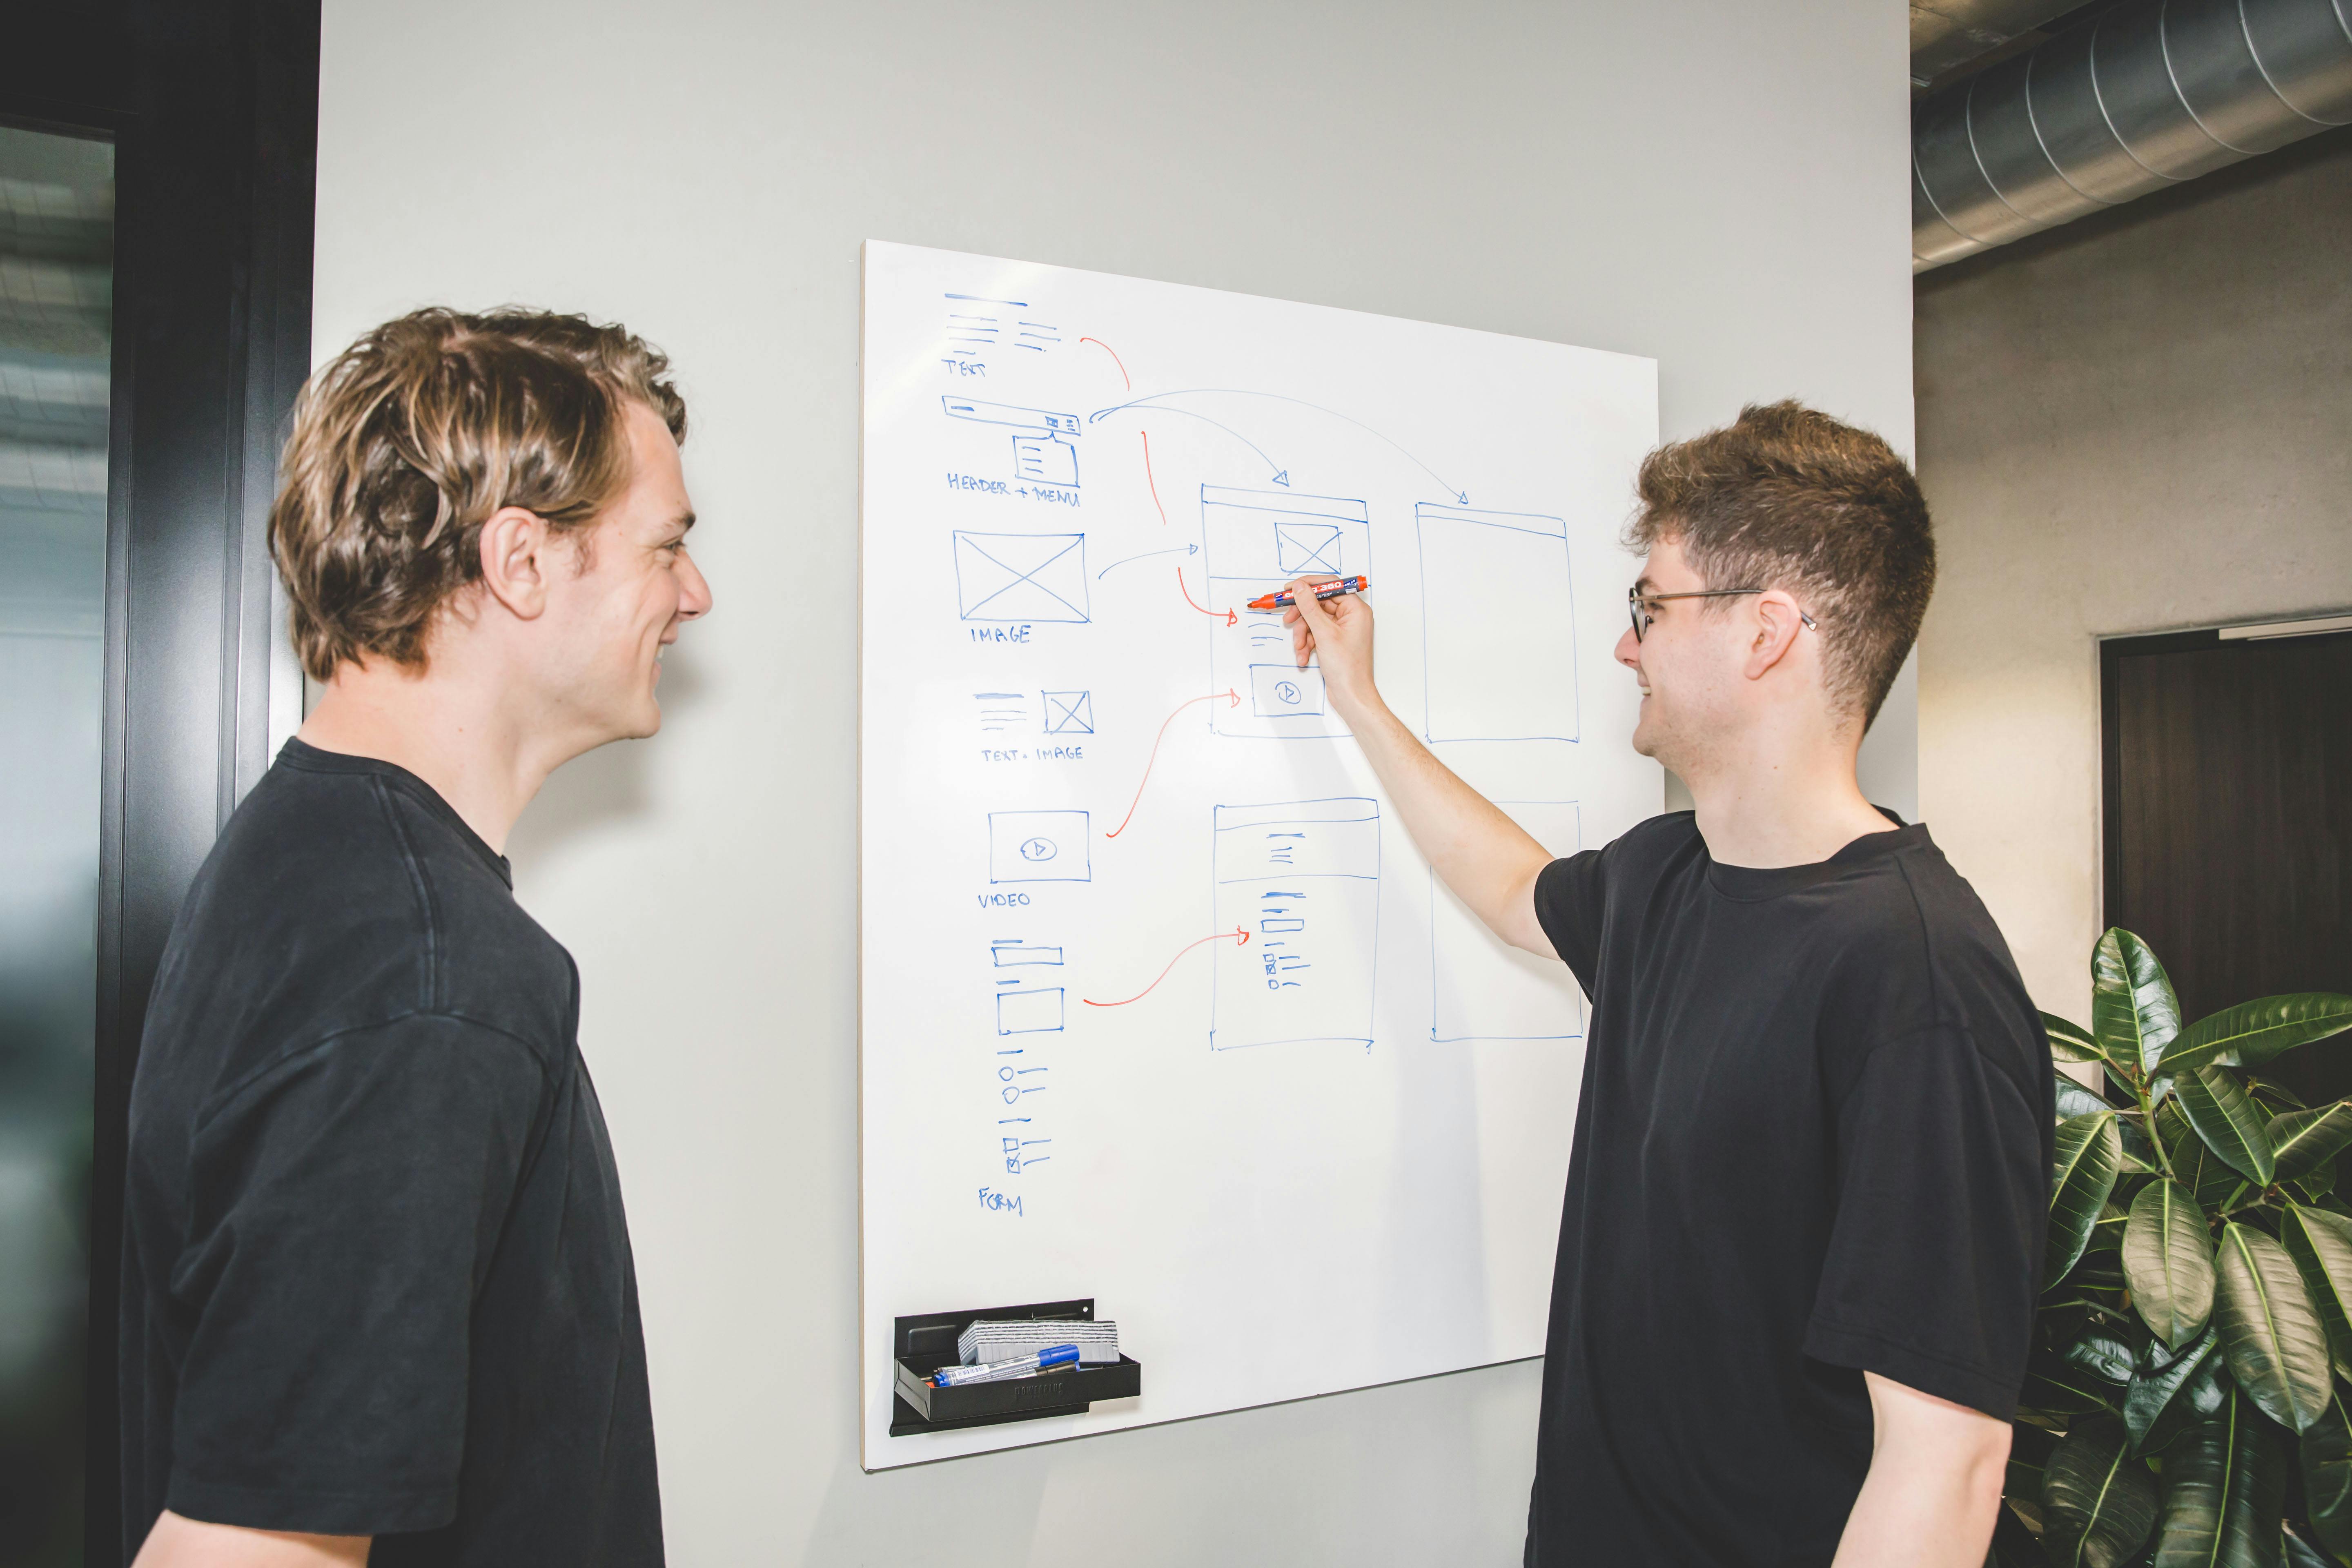 Twee jonge mannen kijken naar een whiteboard, een tekent een technische structuur uit.